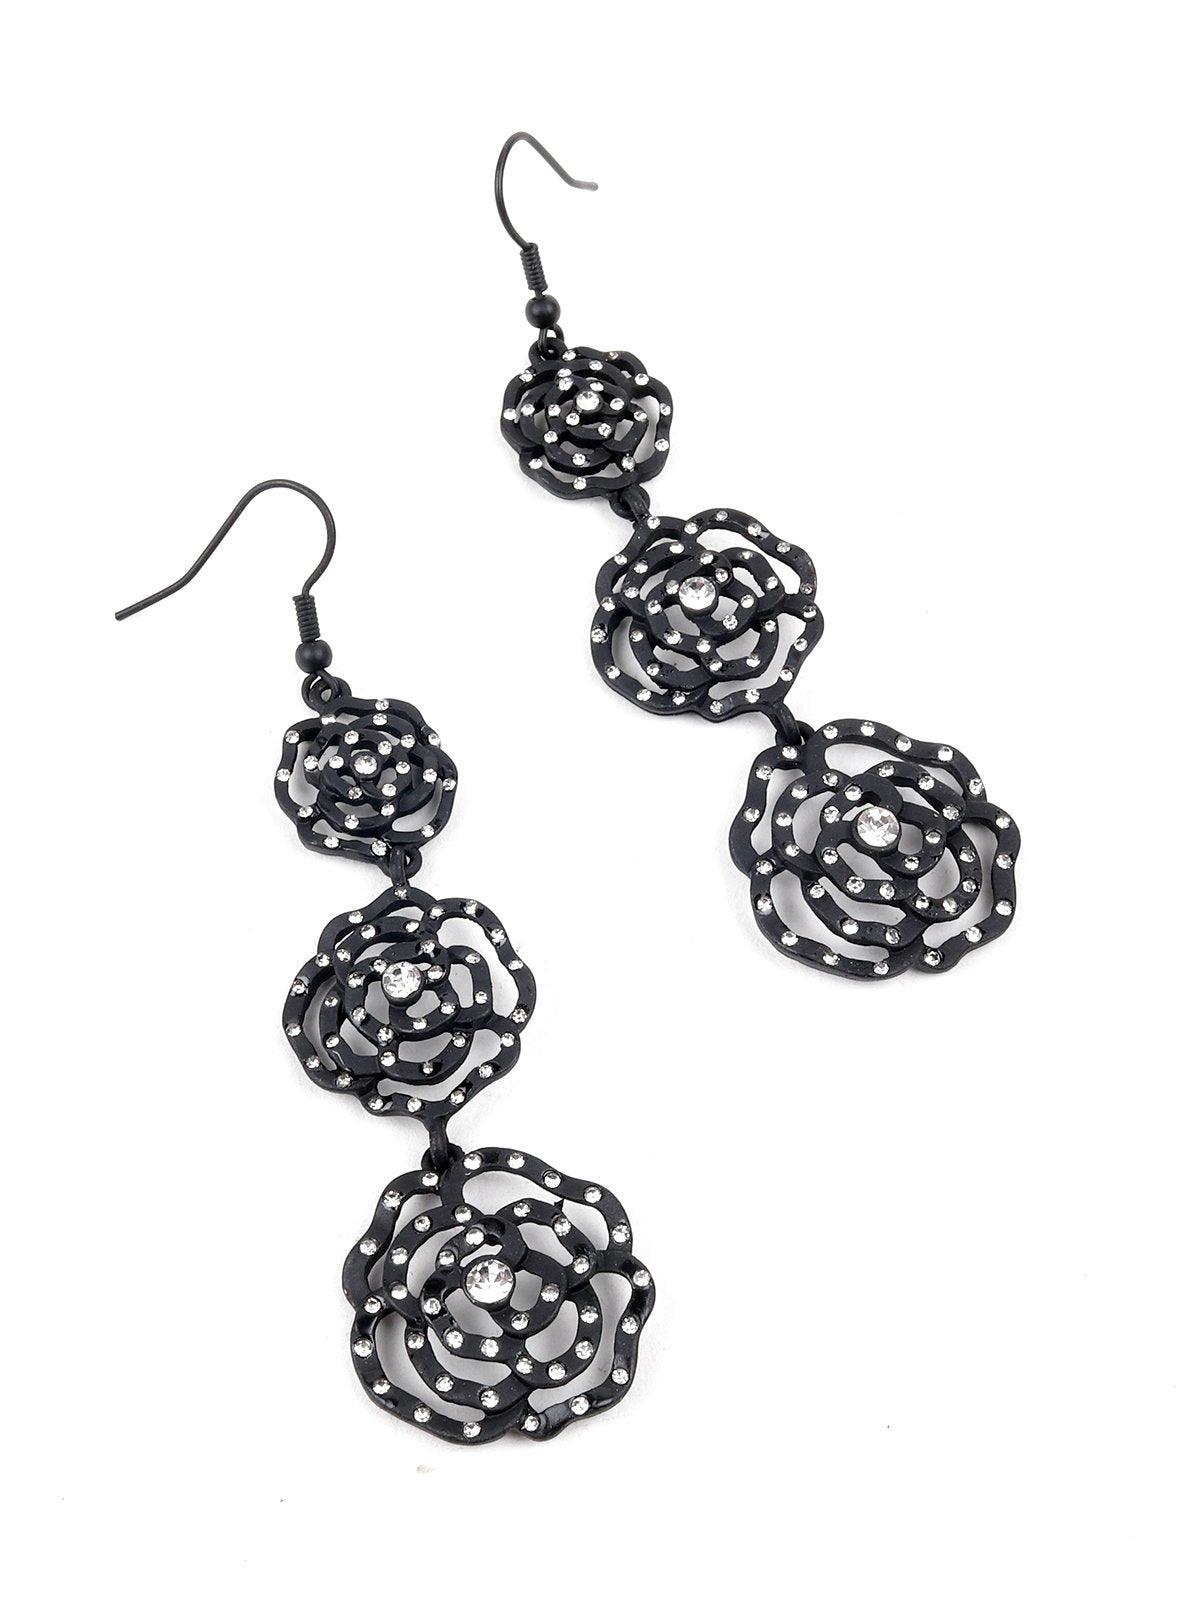 Women's Three Tier Black Floral Earrings - Odette